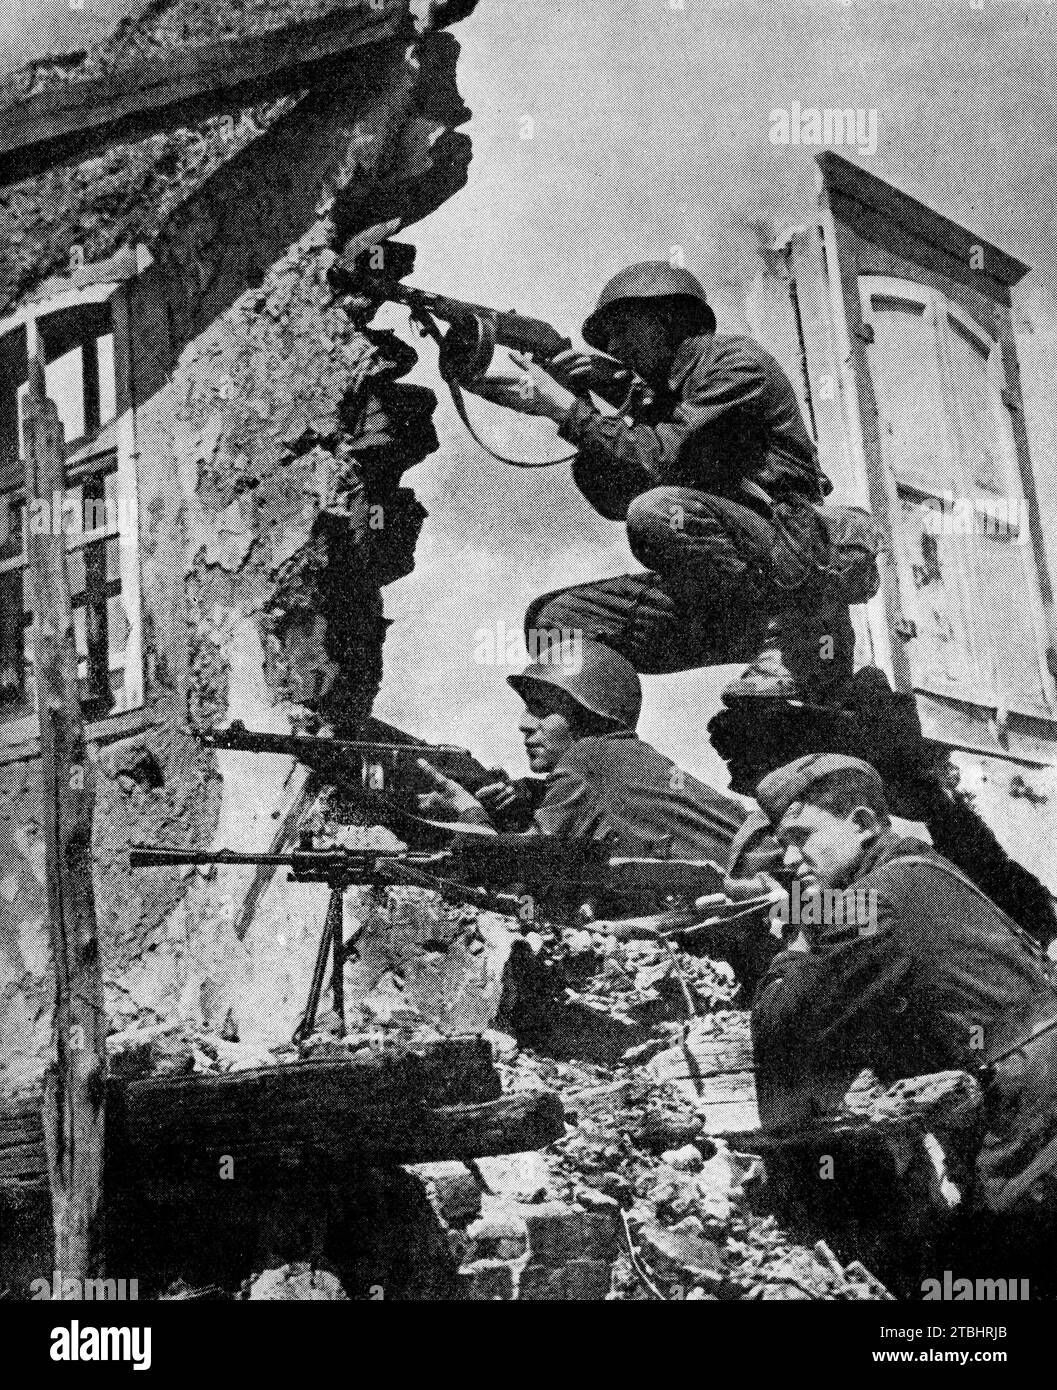 Russische Infanterie, ausgerüstet mit automatischen Waffen in einem Dorf in der Nähe von Woroschilowgrad, später in Luhansk in der Ukraine umbenannt, wartete auf die Schlacht gegen die Wermacht während der deutschen Invasion Russlands während des Zweiten Weltkriegs. Im Juli 1942 rückte die deutsche Armee in Richtung Rostow vor. Stockfoto